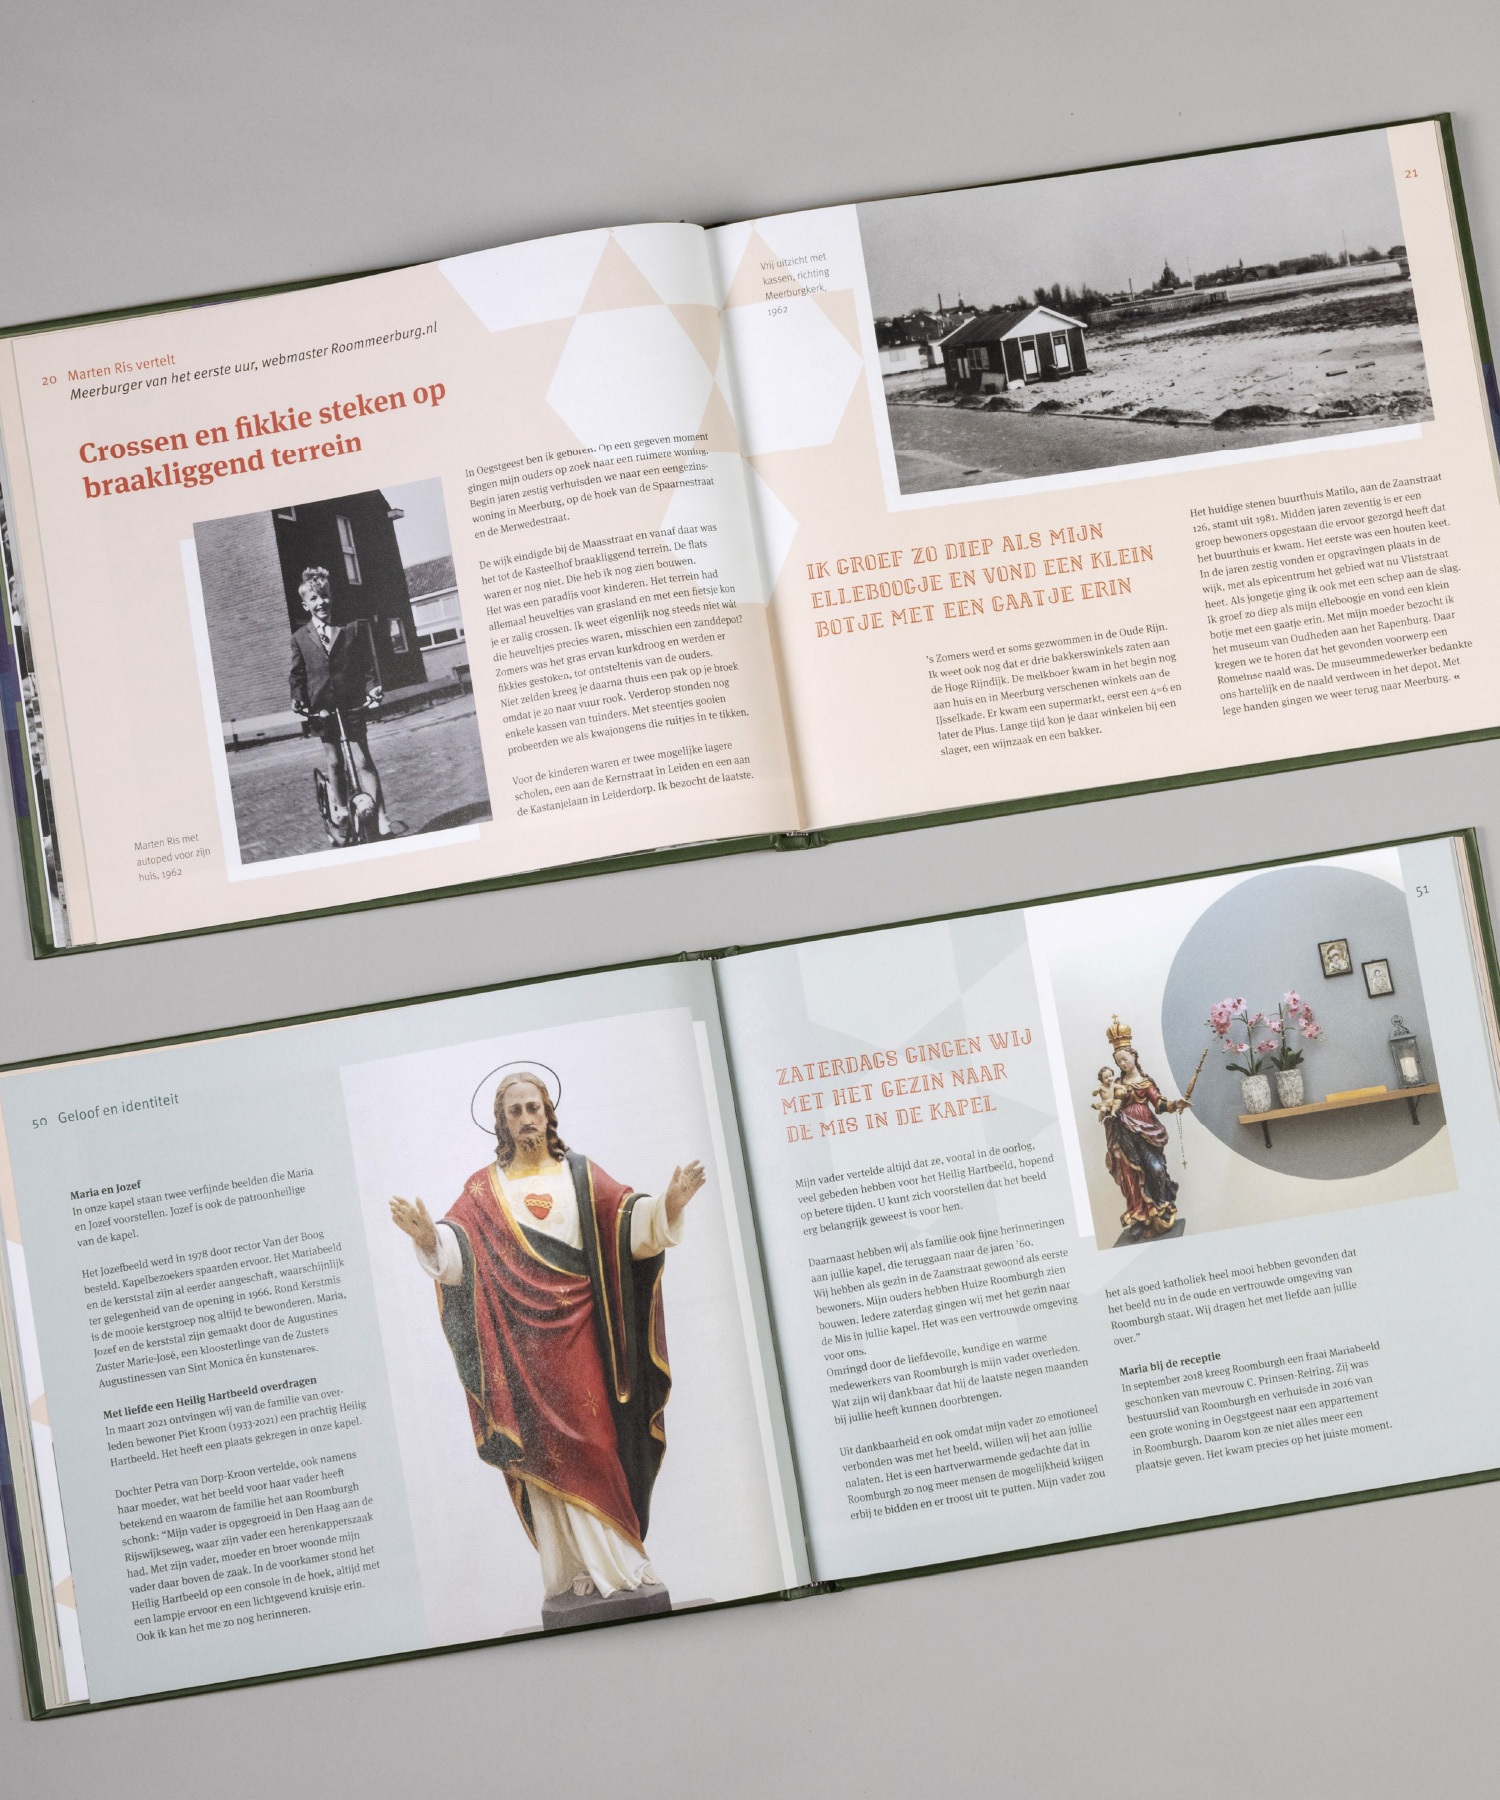 Jubileumboek Roomburgh 55 jaar. Het rooms-katholieke zorgcentrum Roomburgh in Leiden bestaat 55 jaar. Ter ere van dit jubileum is een boek uitgebracht. Het ontwerp is van M-space grafisch ontwerpers uit Den Haag.